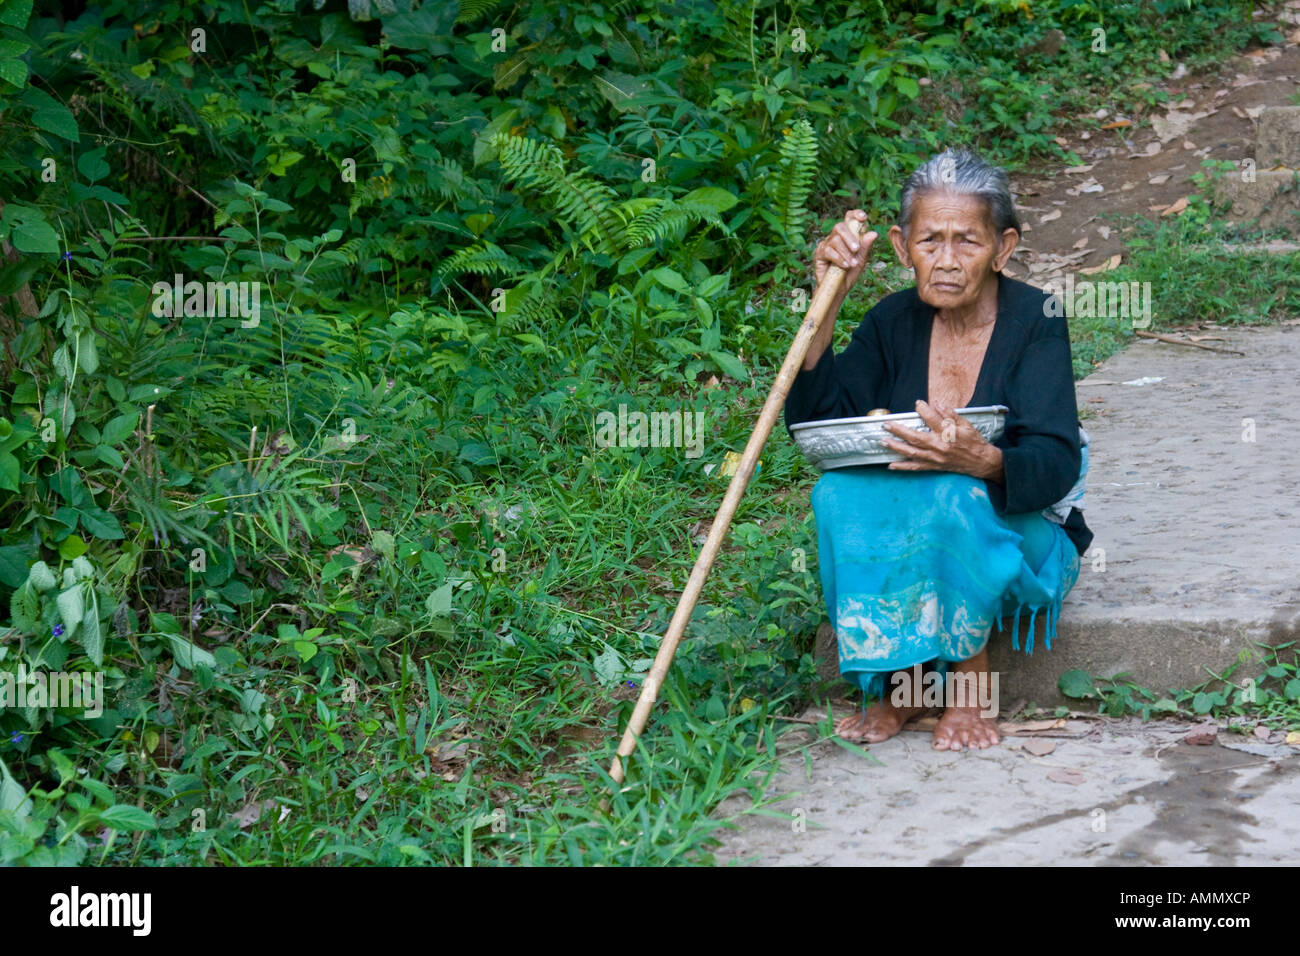 Personnes âgées femme balinaise avec bâton de marche Ubud Bali Indonésie Banque D'Images